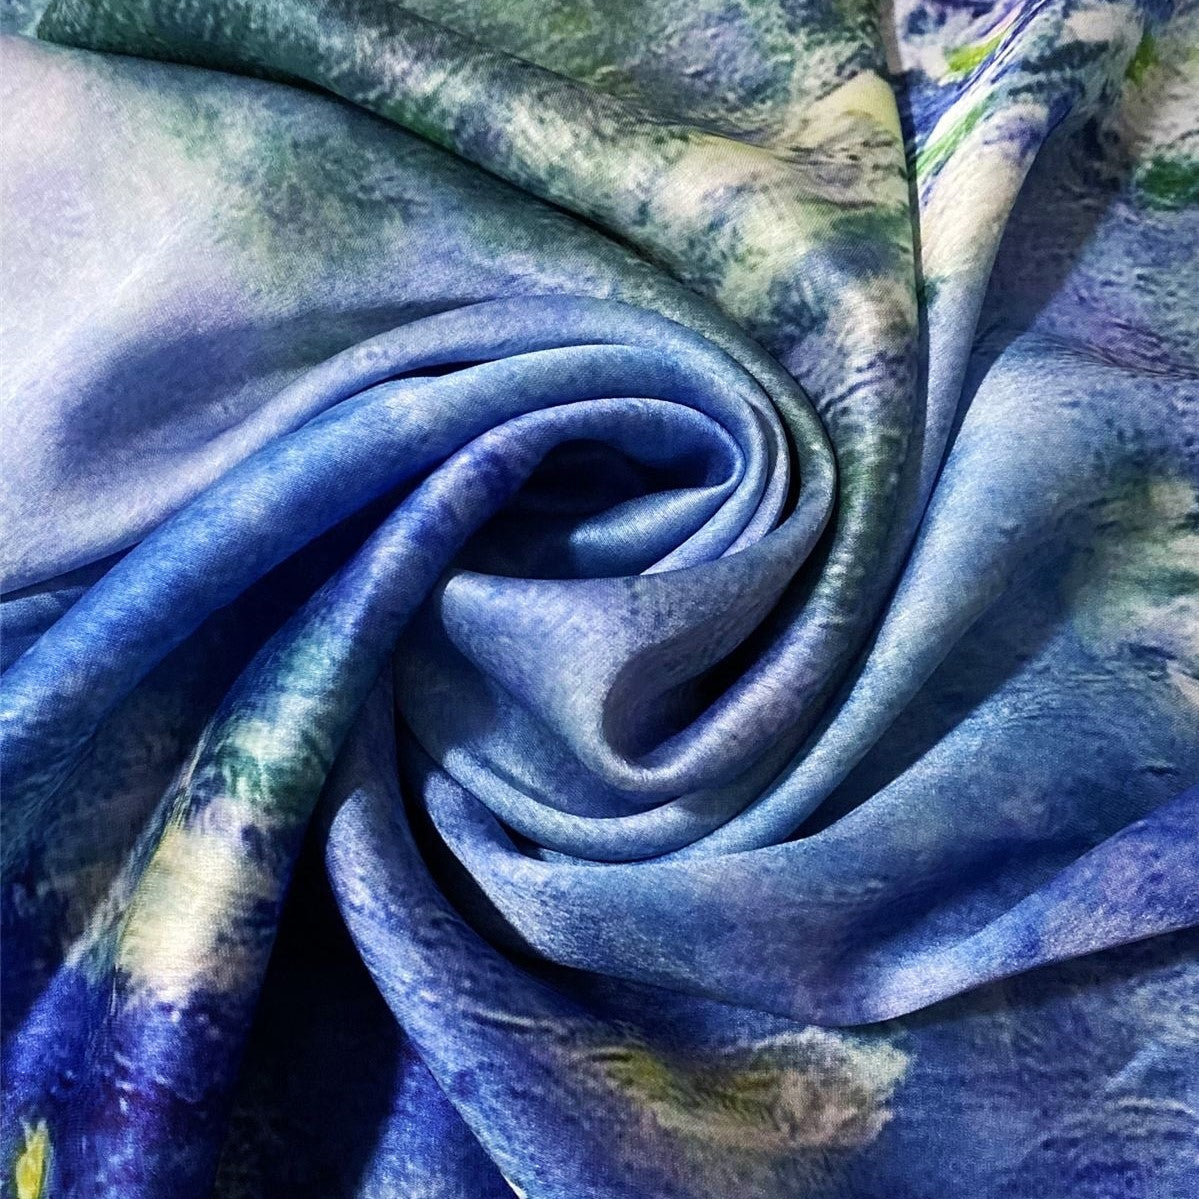 Hodvábny šál-šatka, 70 cm x 180 cm, Claude Monet - Water Lilies